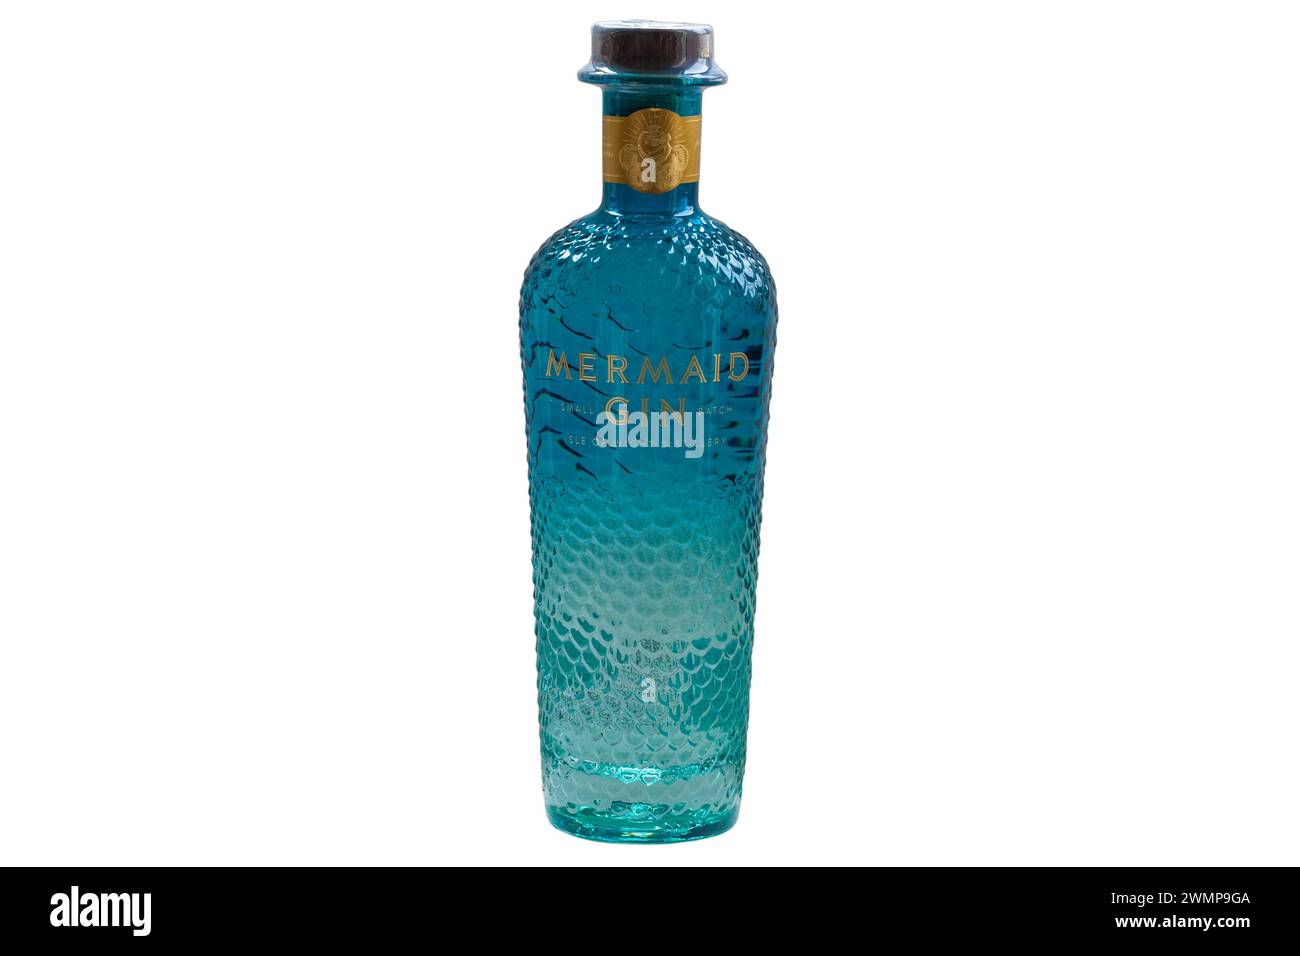 Flasche Mermaid Gin kleine Charge von der Isle of Wight Distillery isoliert auf weißem Hintergrund Stockfoto